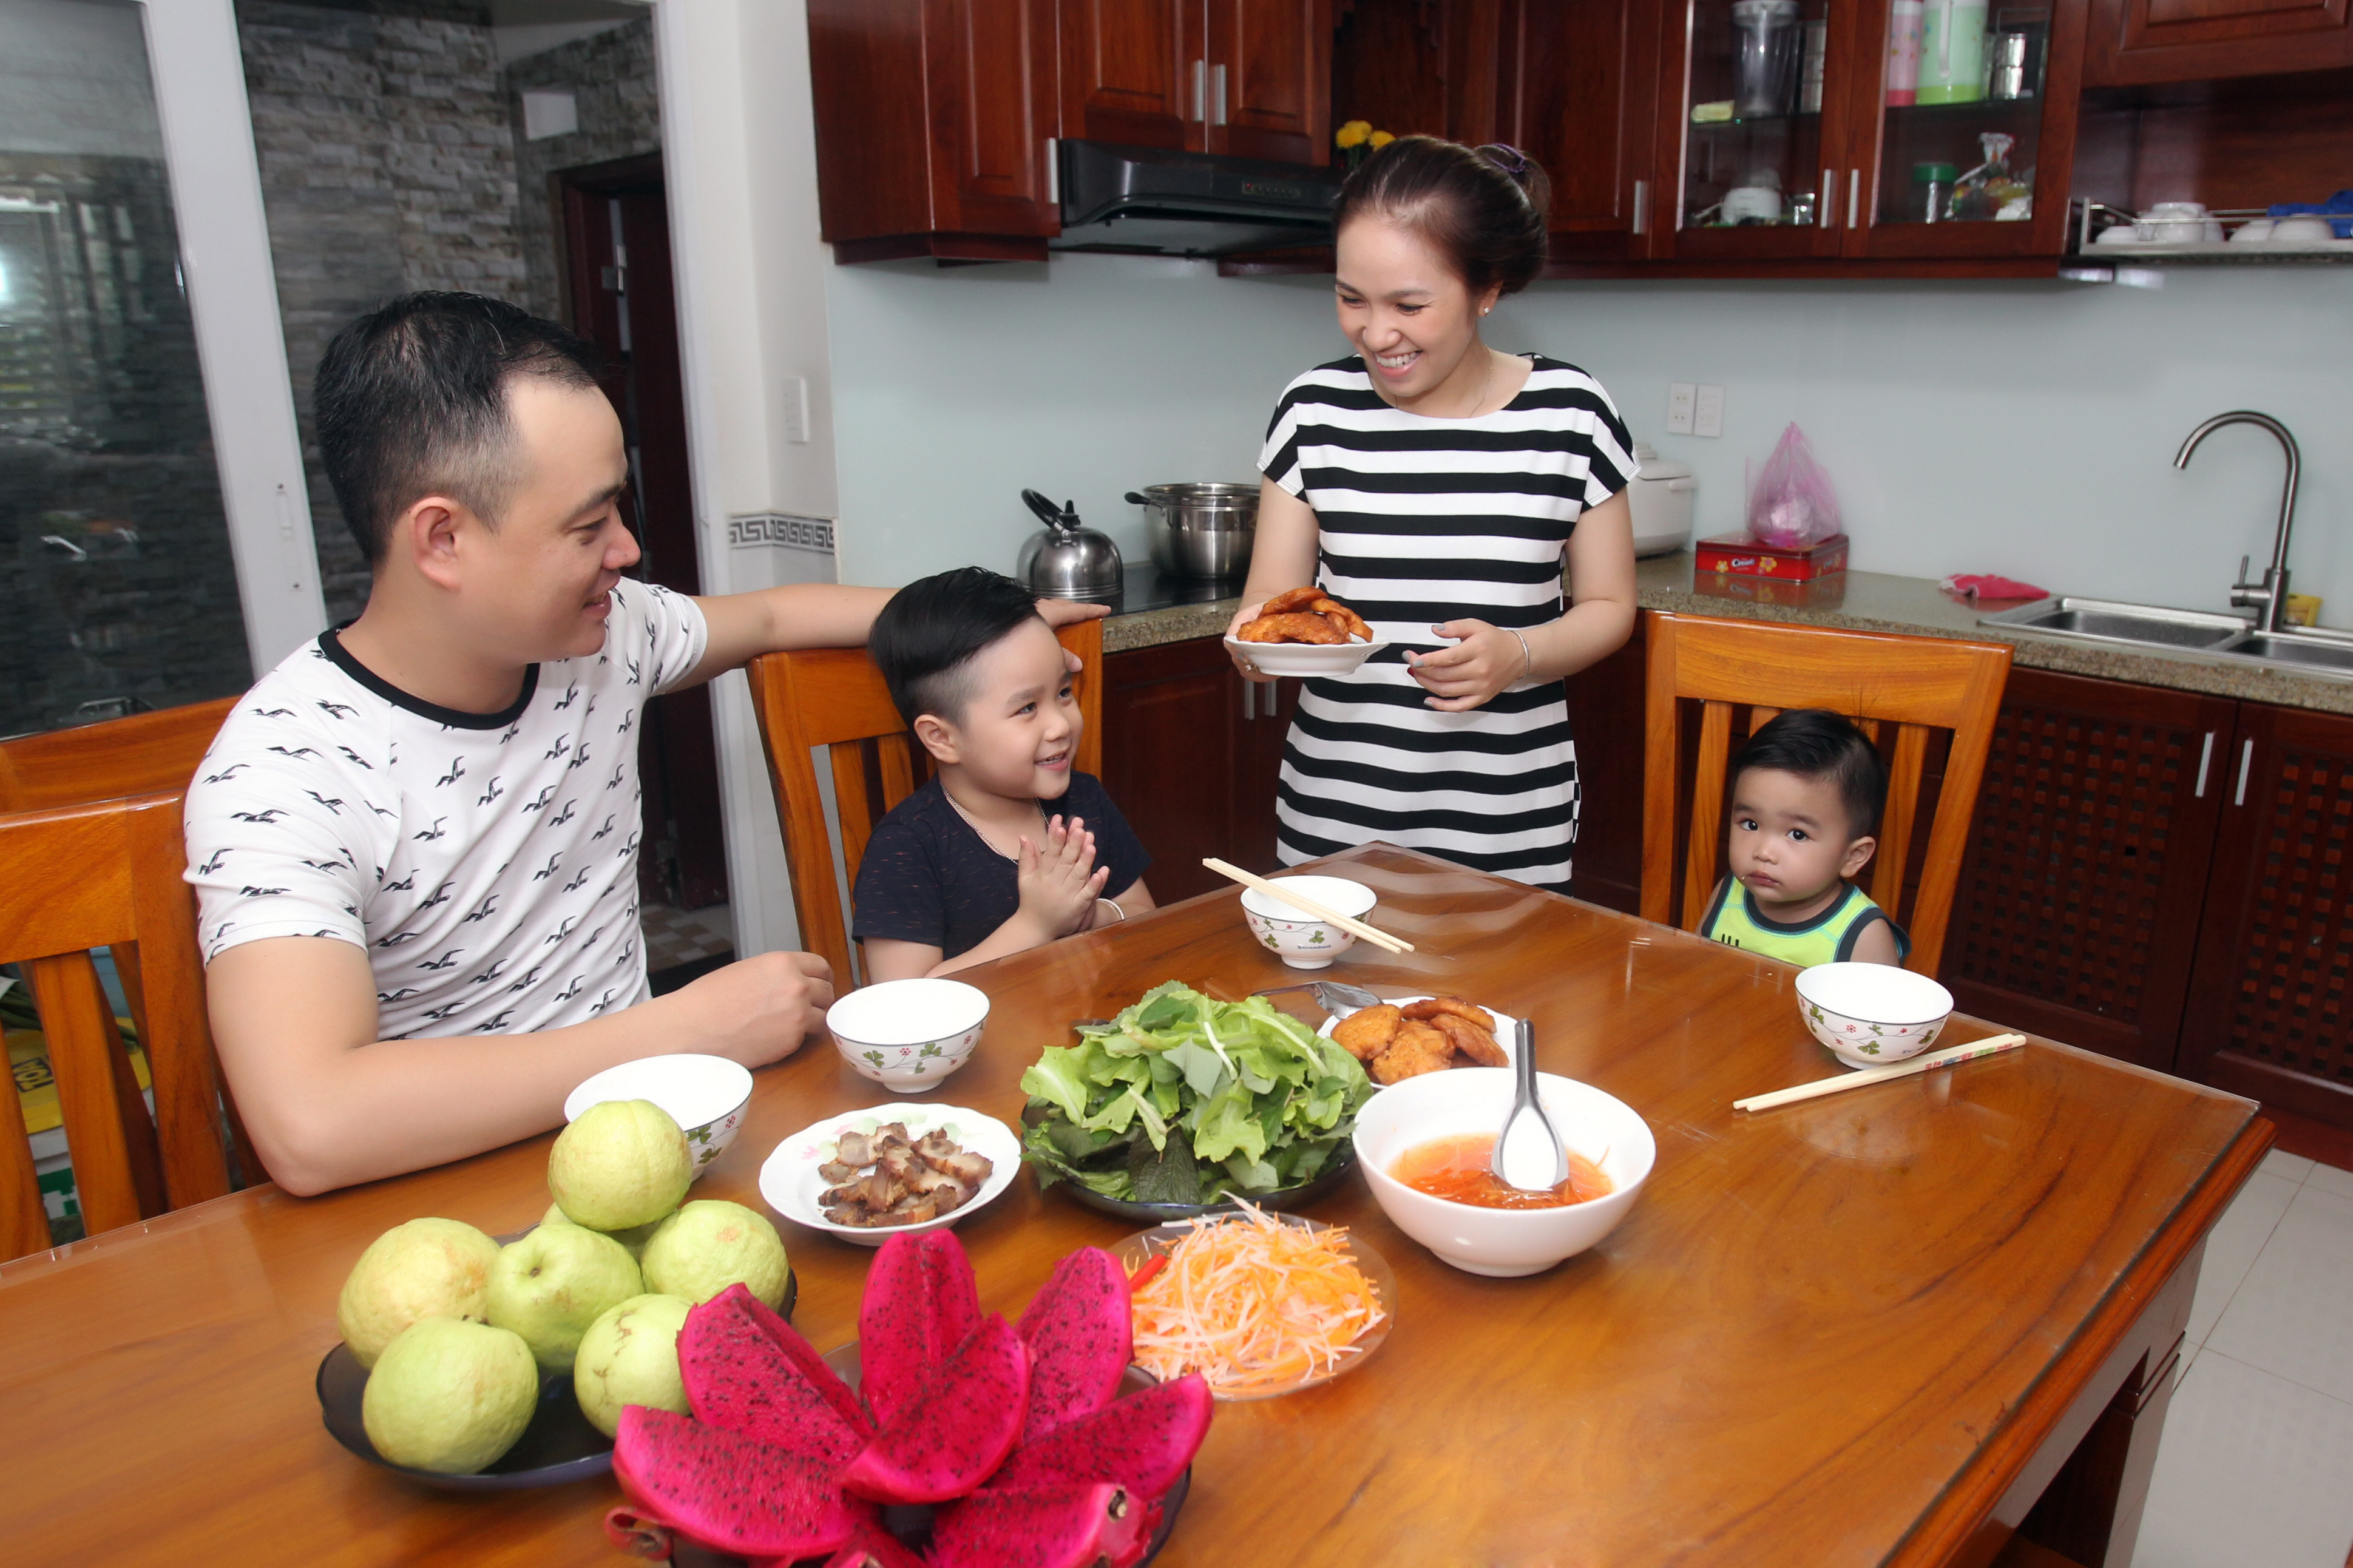 Bữa cơm gia đình là nơi gắn kết tình cảm, đặc biệt đối với người lao động. Hãy xem hình ảnh để cảm nhận người lao động Việt Nam đến với nhà sau một ngày làm việc và thưởng thức bữa cơm ấm áp cùng gia đình.